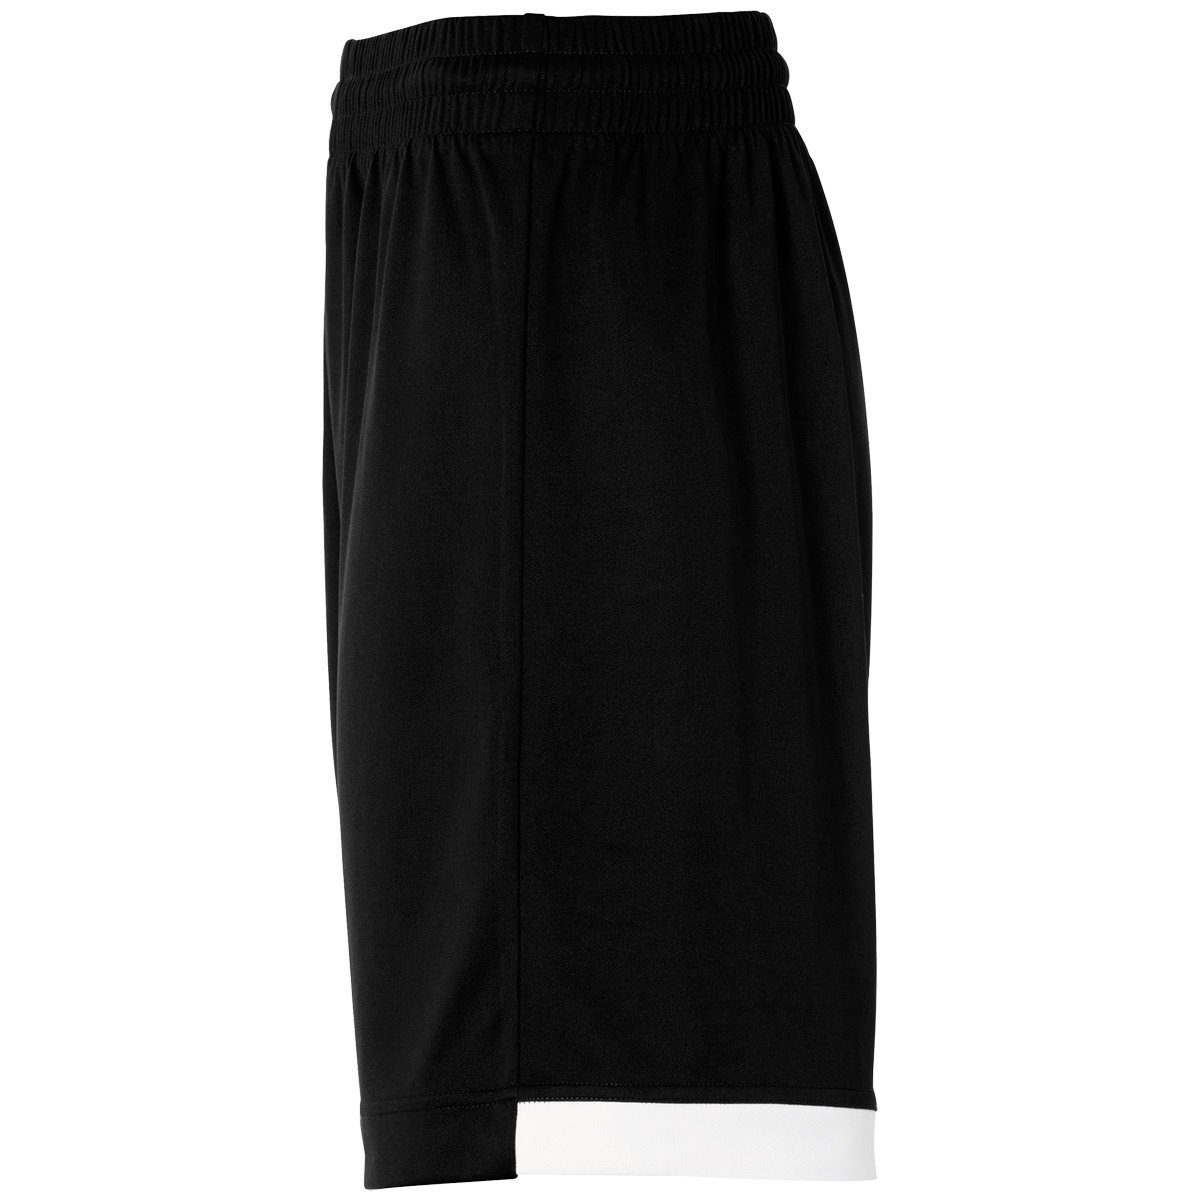 schwarz/weiß LONG SHORTS PLAYER Shorts WOMEN Shorts Kempa Kempa